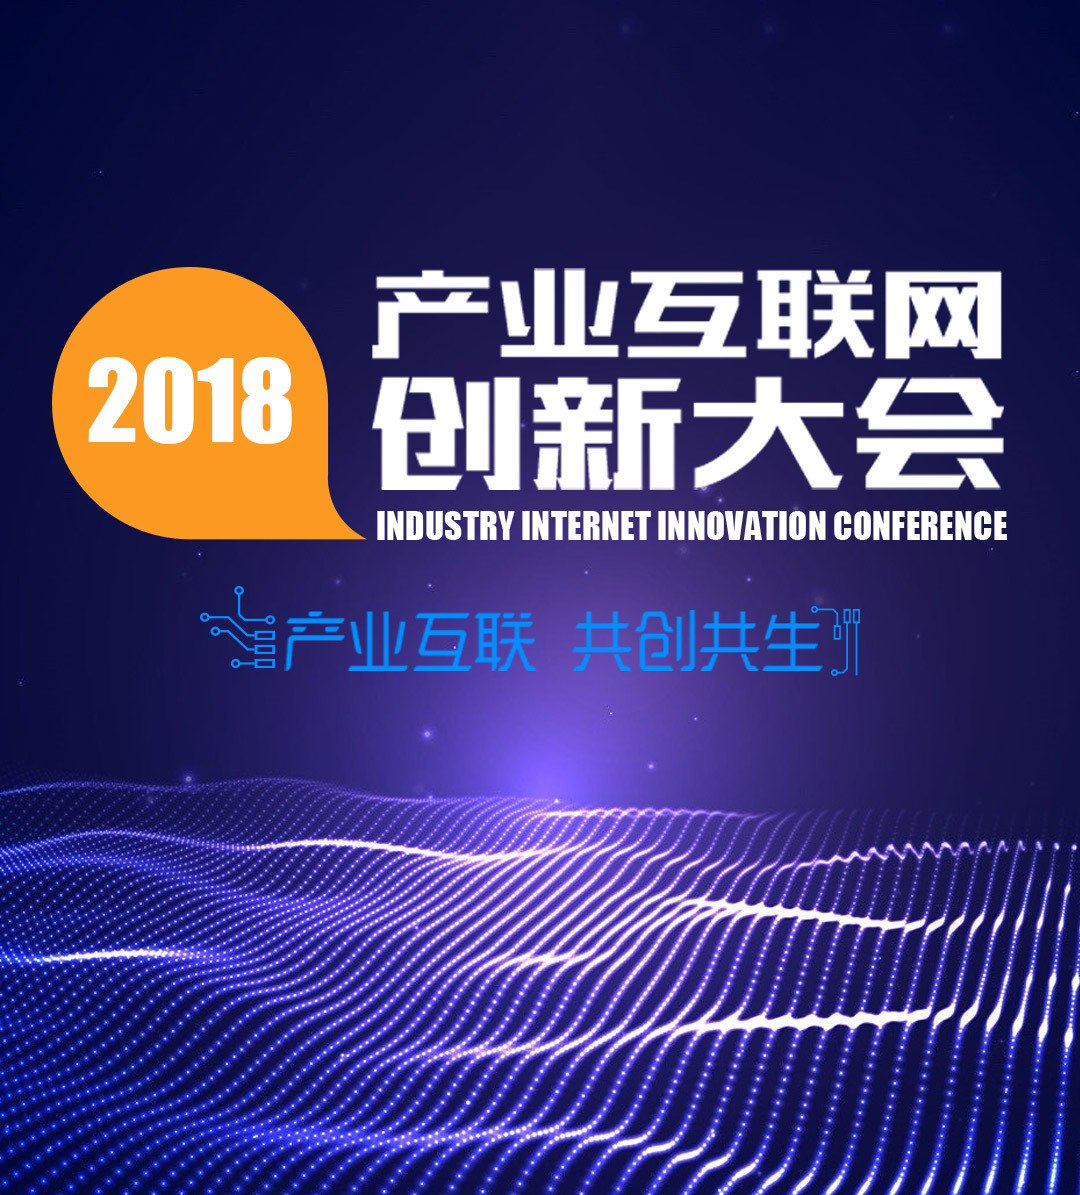 2018年产业互联网创新大会